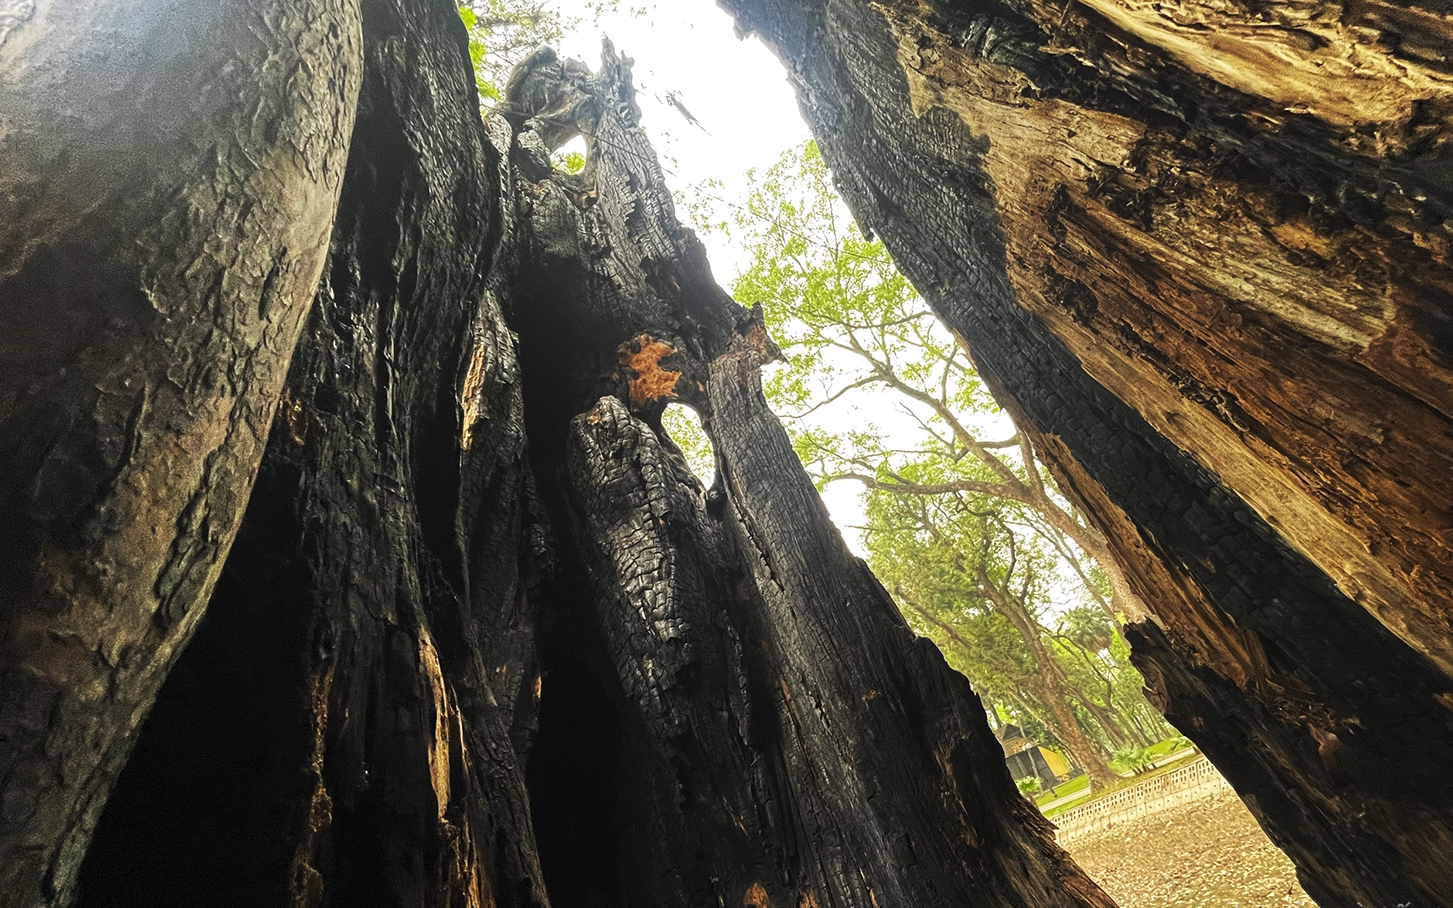 Nhiều cây cổ thụ hơn 100 tuổi chết khô ở công viên Bách Thảo, người dân đi tập thể dục nơm nớp lo sợ